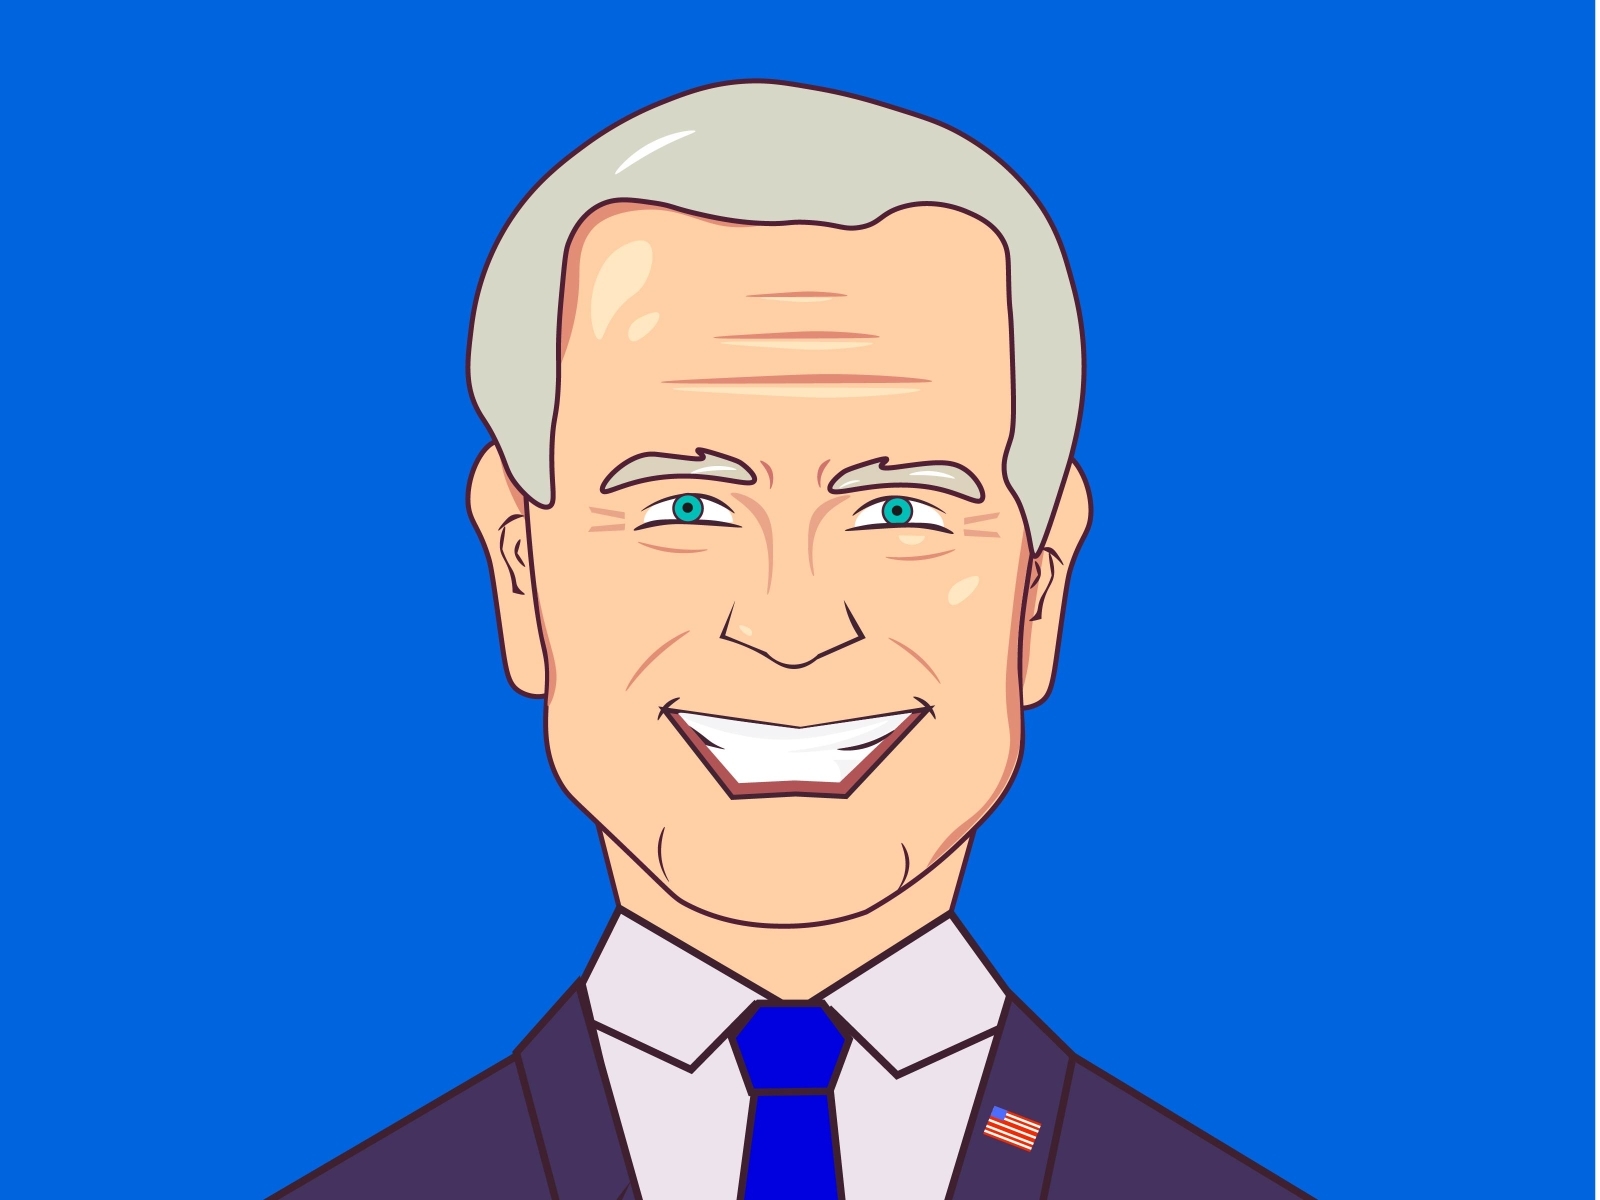 Joe Biden by John Arreglo on Dribbble